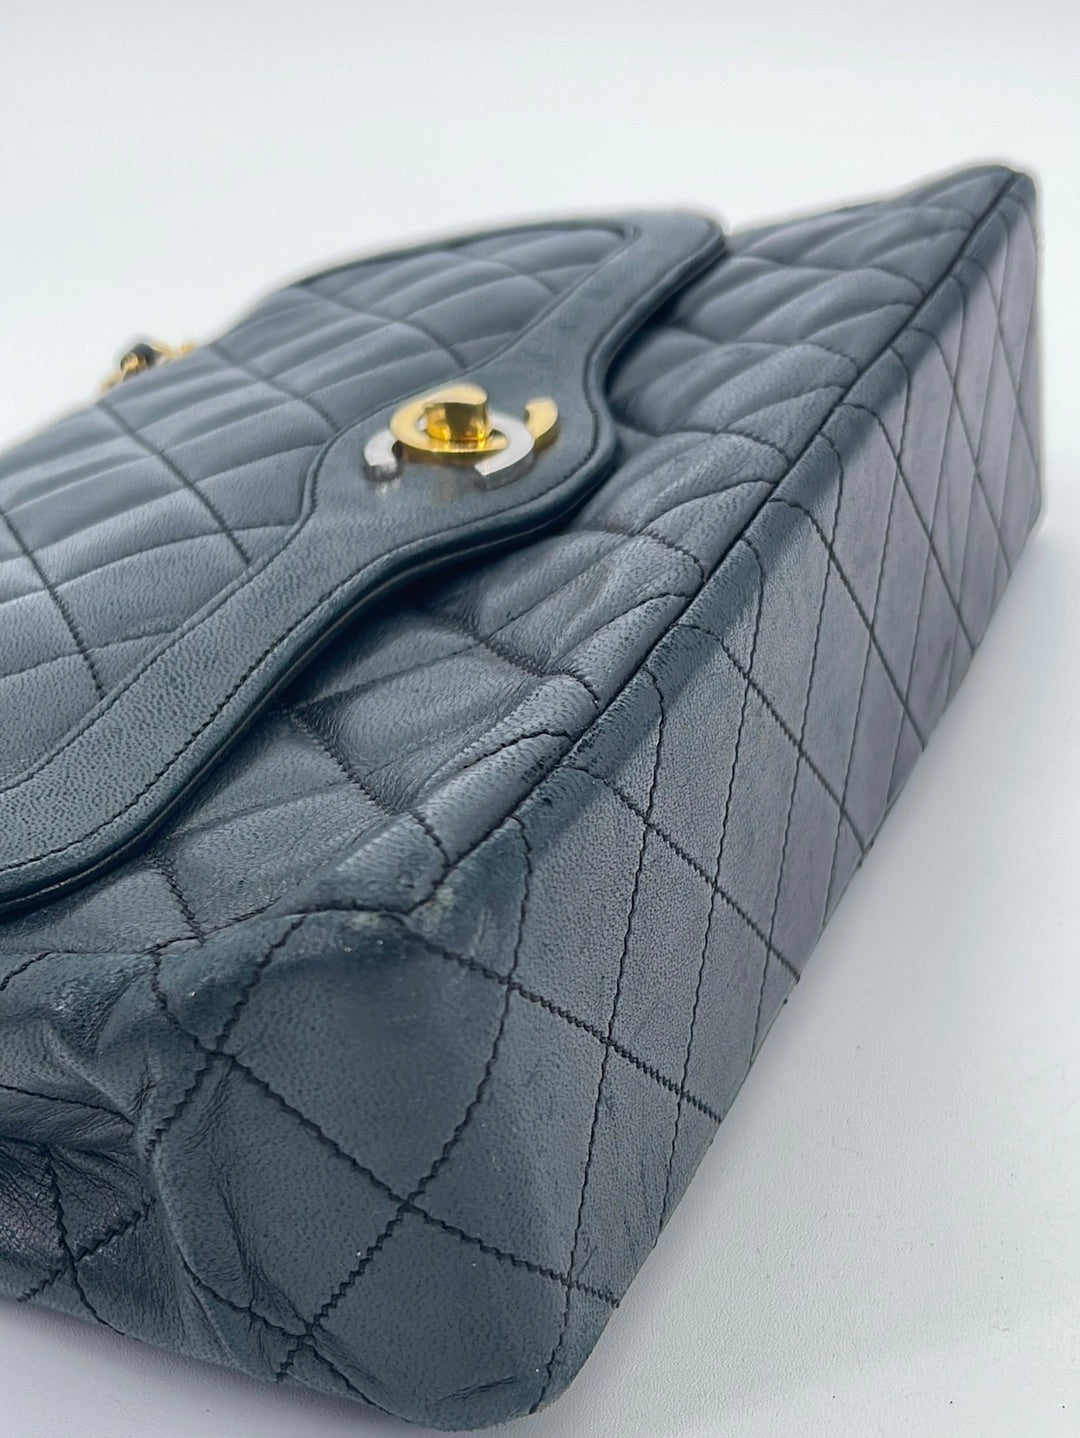 Vintage CHANEL Paris Limited Double Flap Quilted Black Lambskin Shoulder Bag HX3B6DR 063023